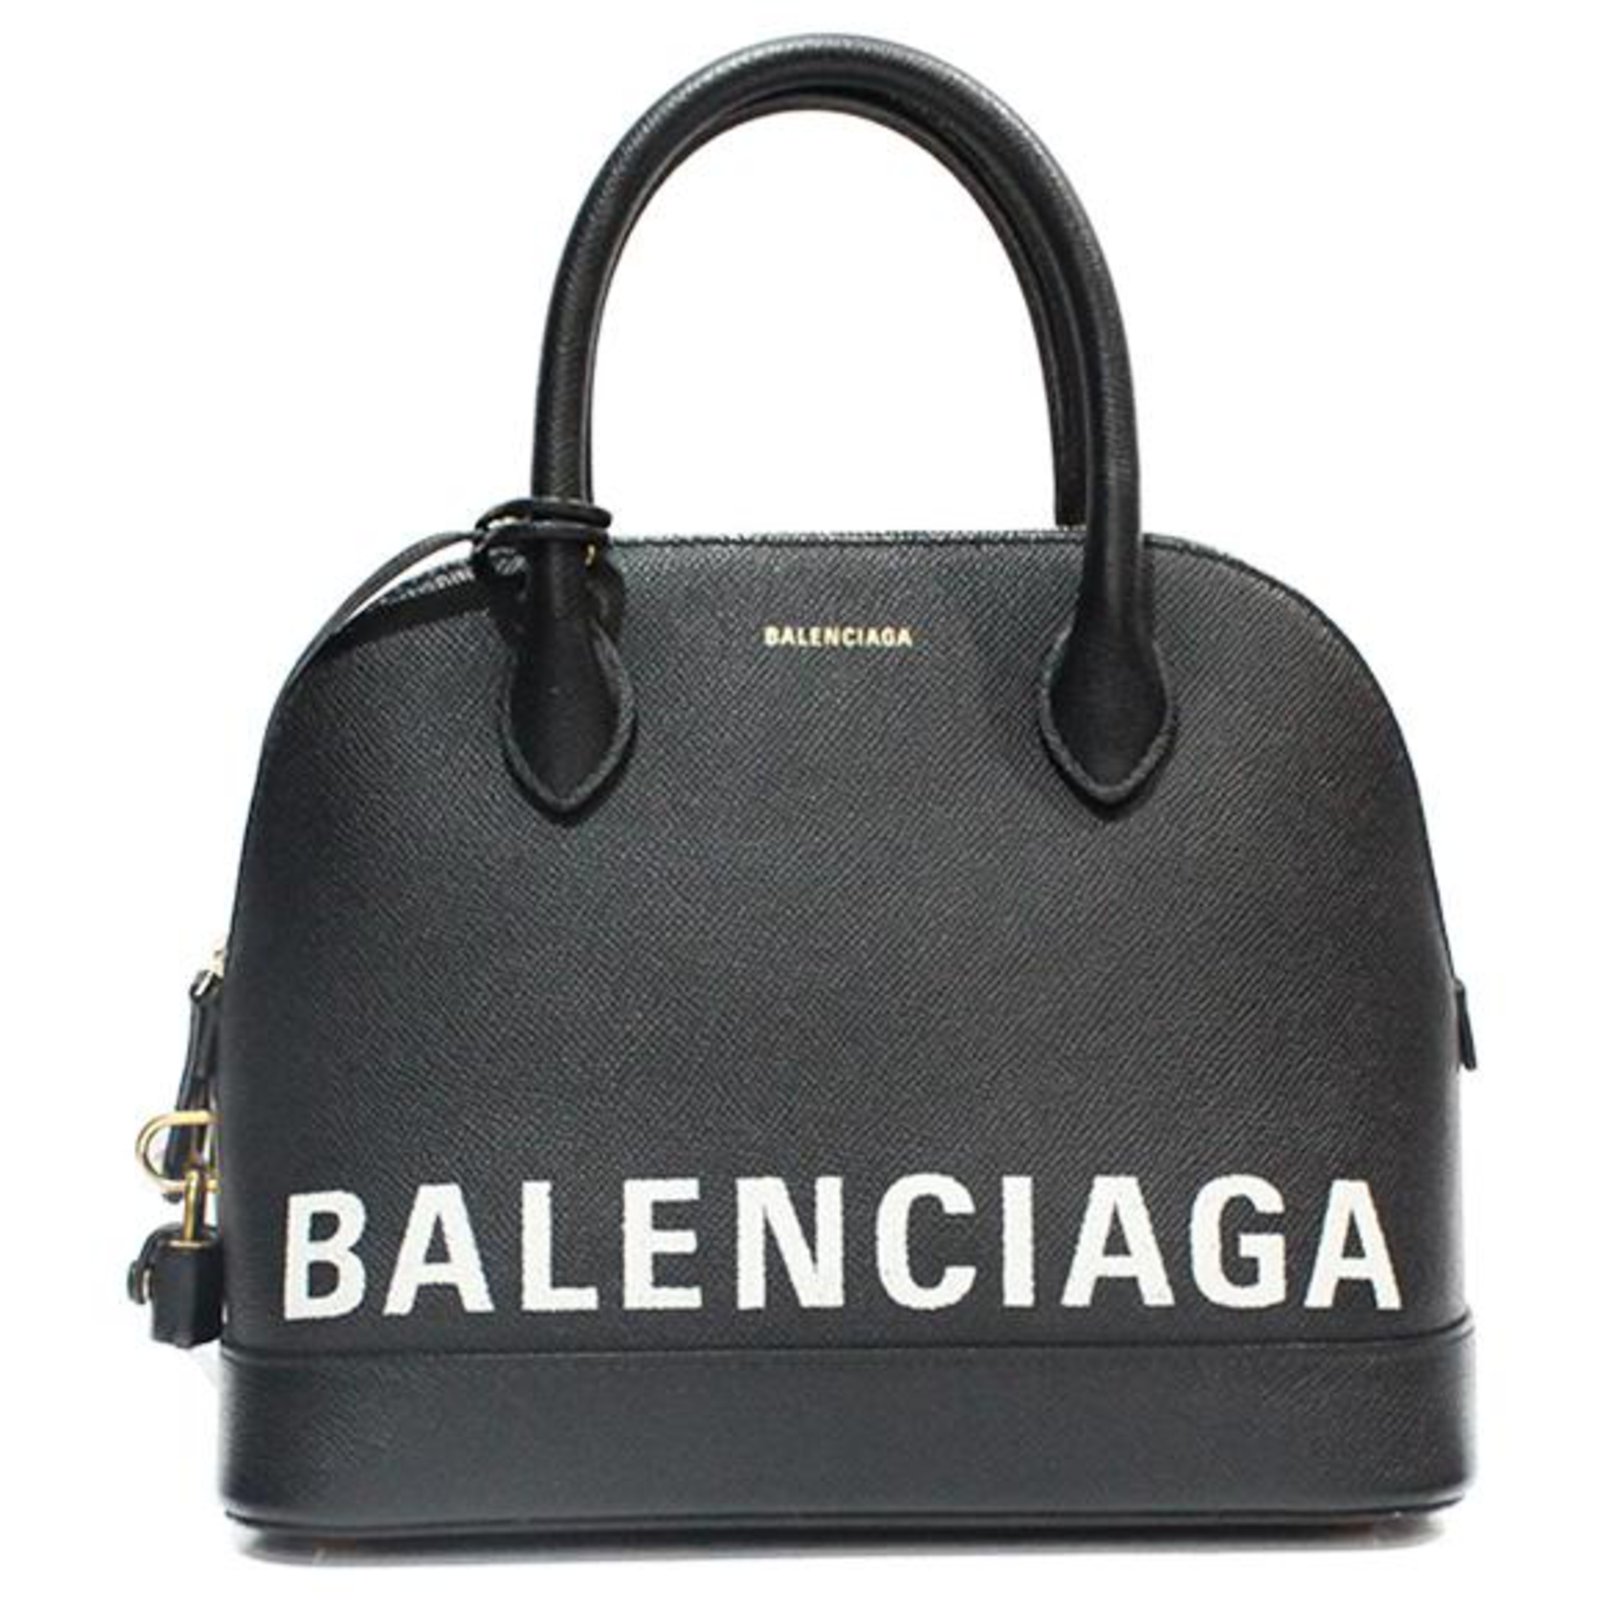 BALENCIAGA Taschen online kaufen